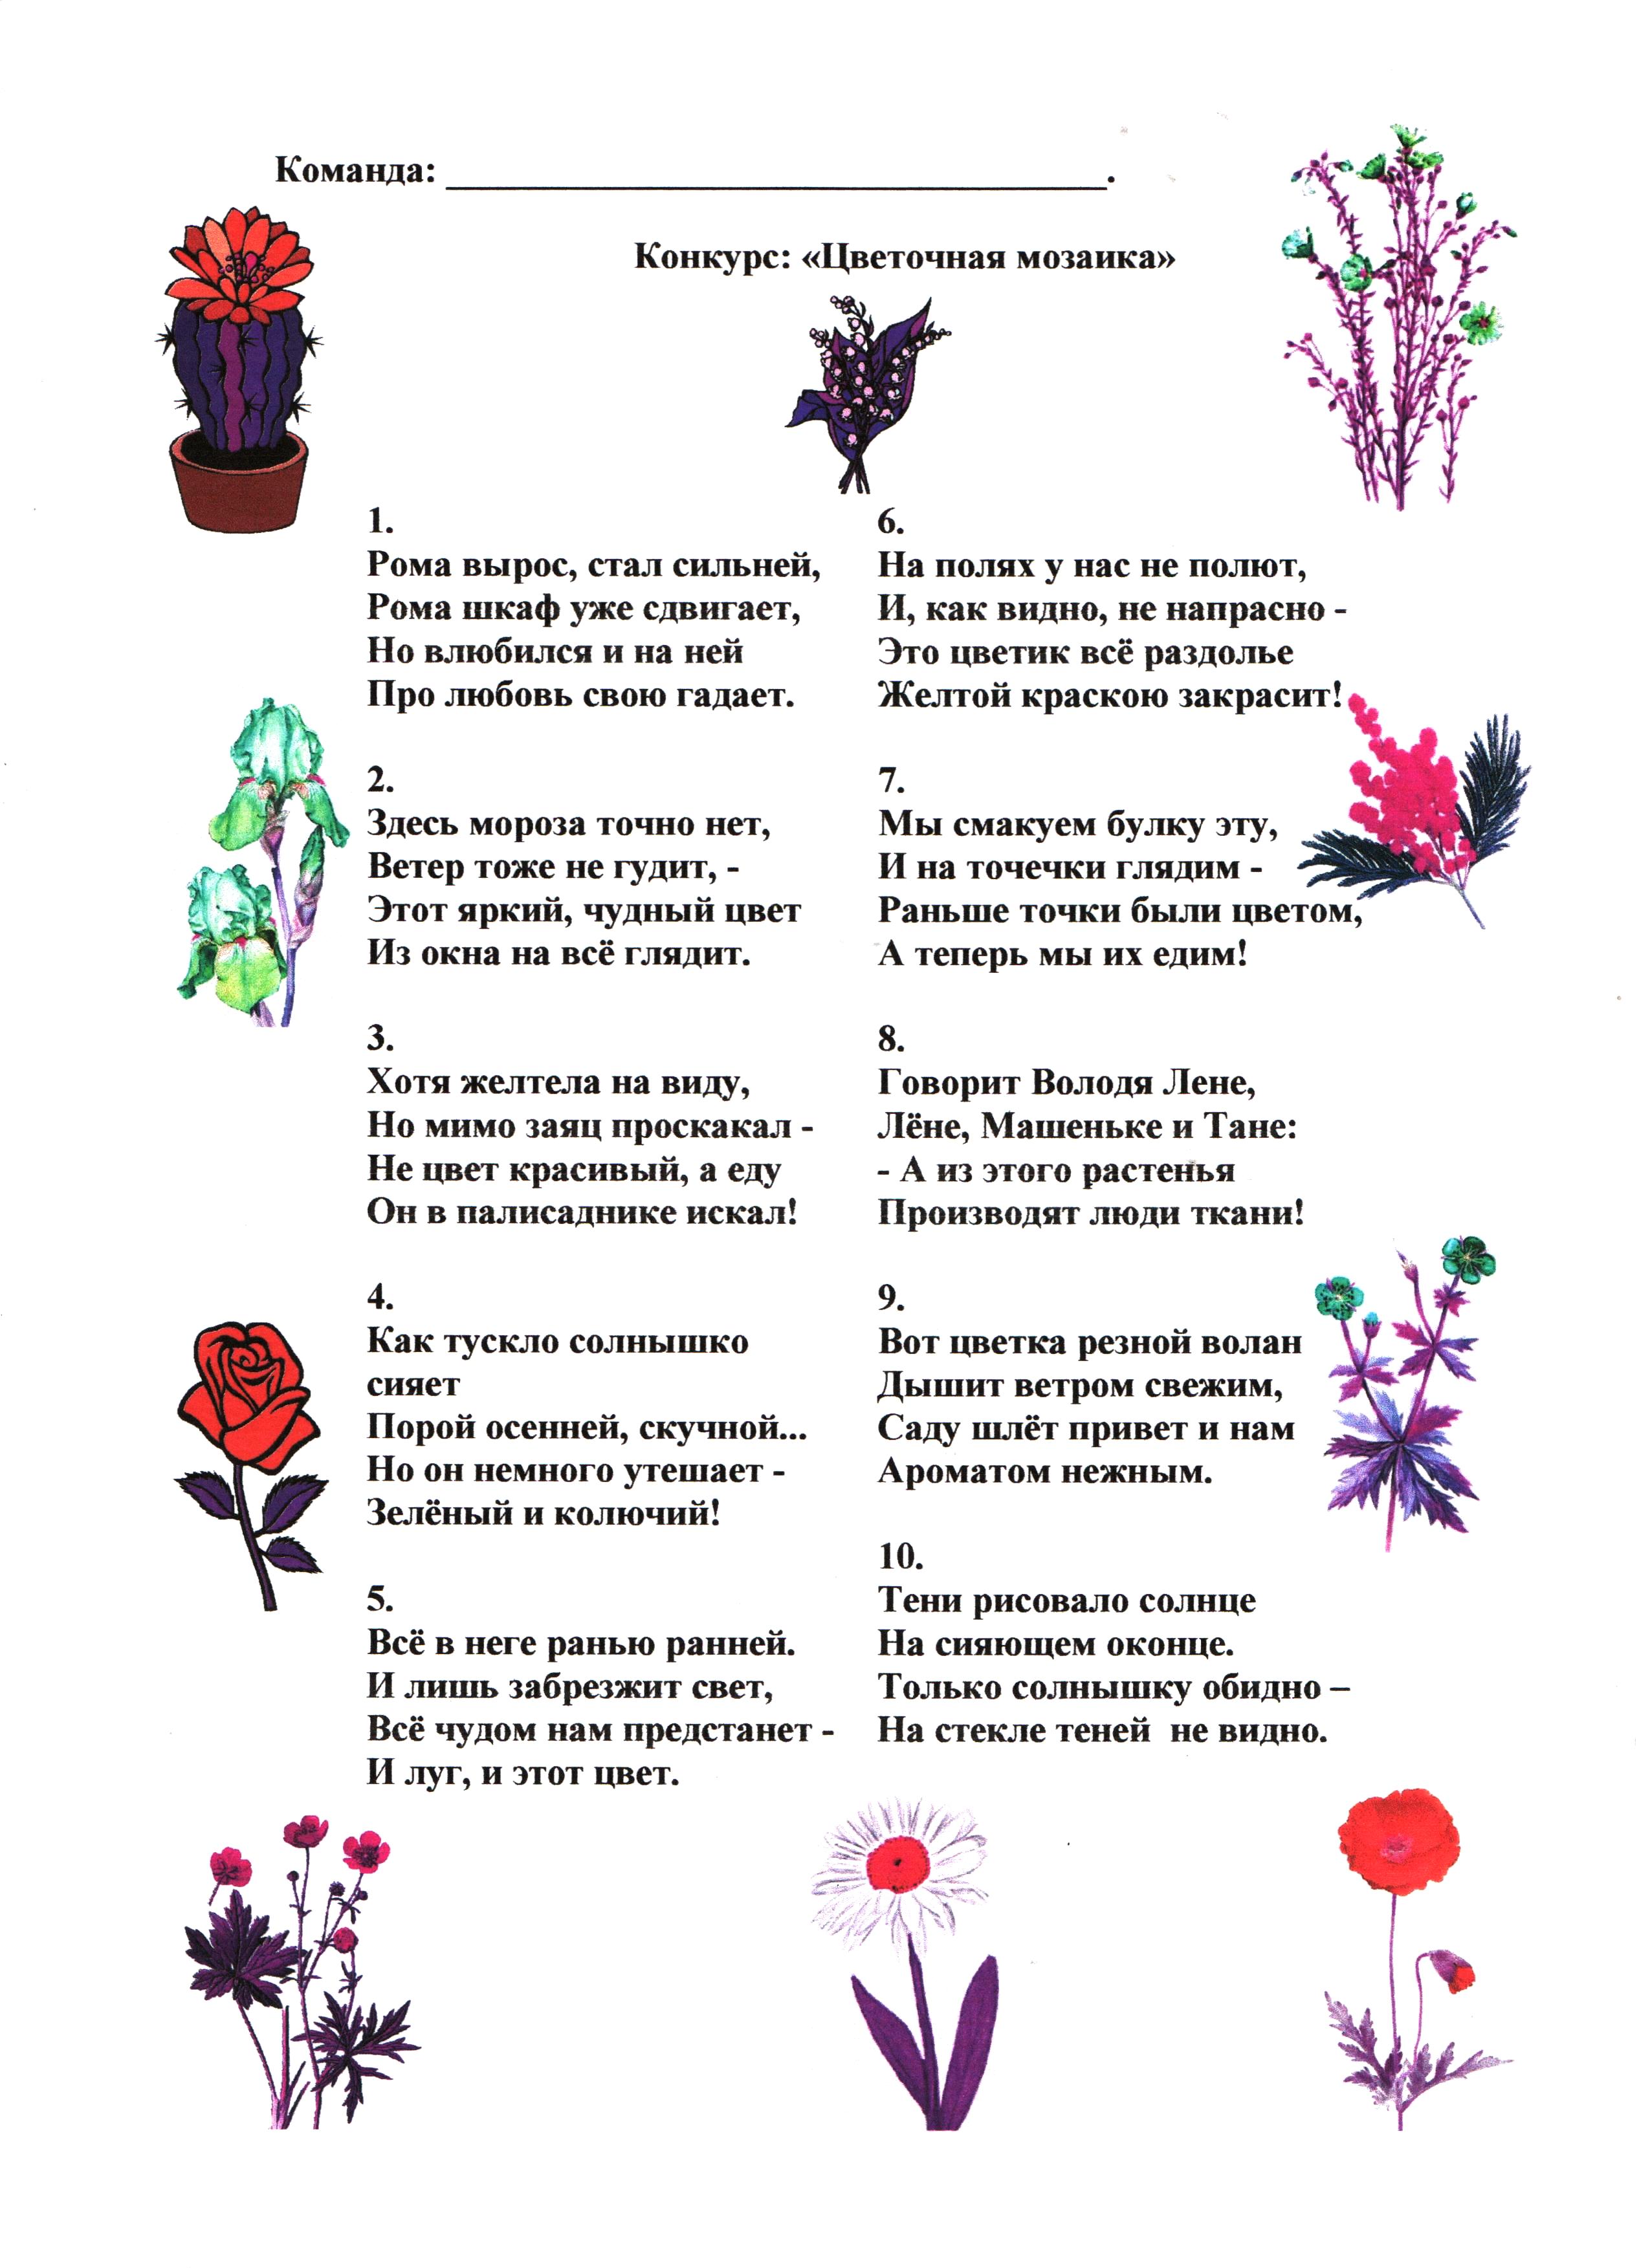 Загадки про растения 1 класс. Загадки для детей 7 -8 с ответами про растения. Загадки про цветы с прилагательными. Загадки про цветы. Загадки про цветы для детей.